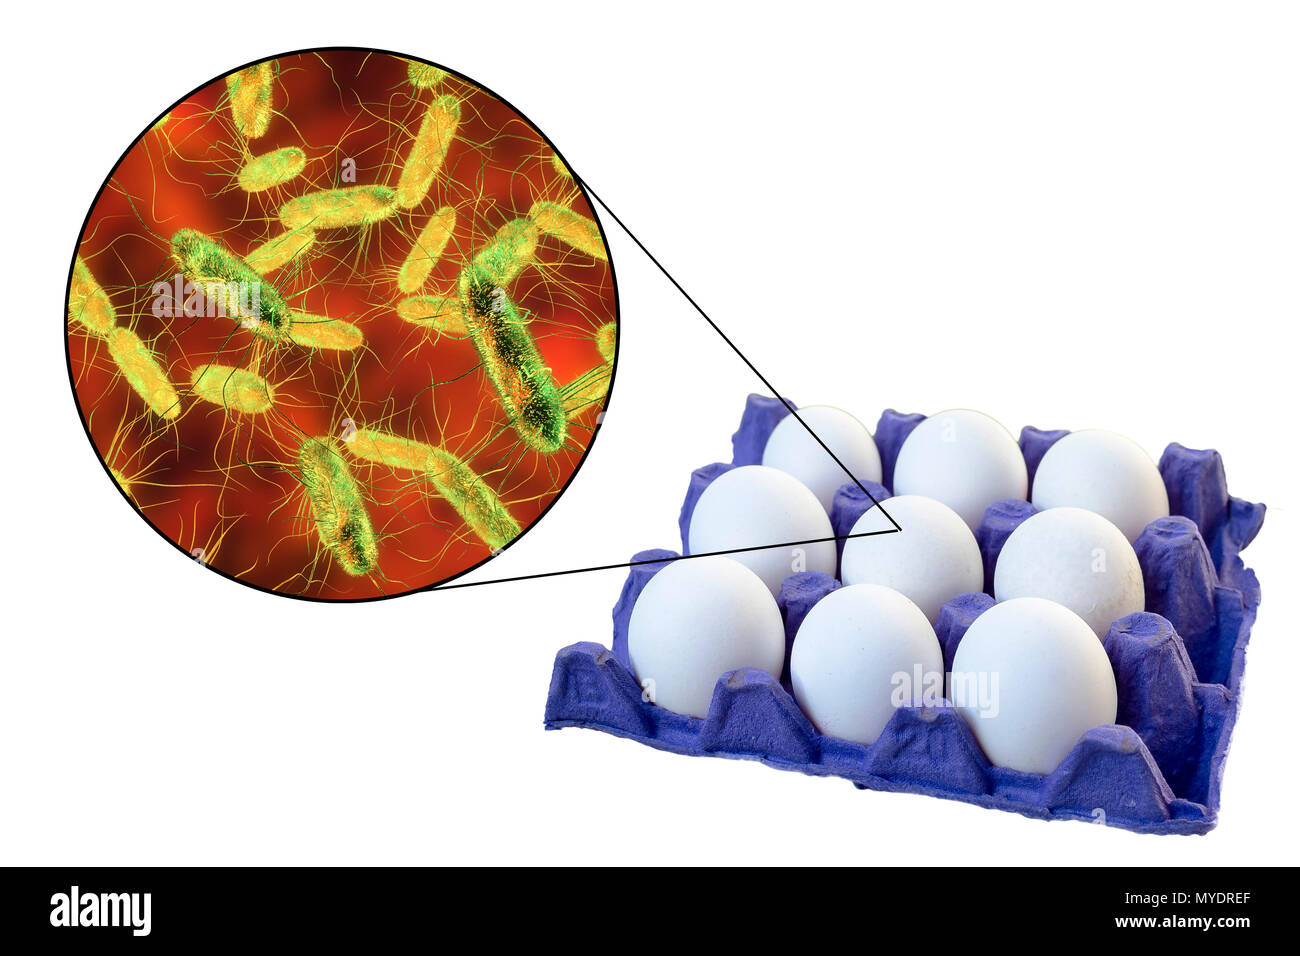 Los huevos de pollo como fuente de salmonelosis, Ilustración conceptual. Foto de stock